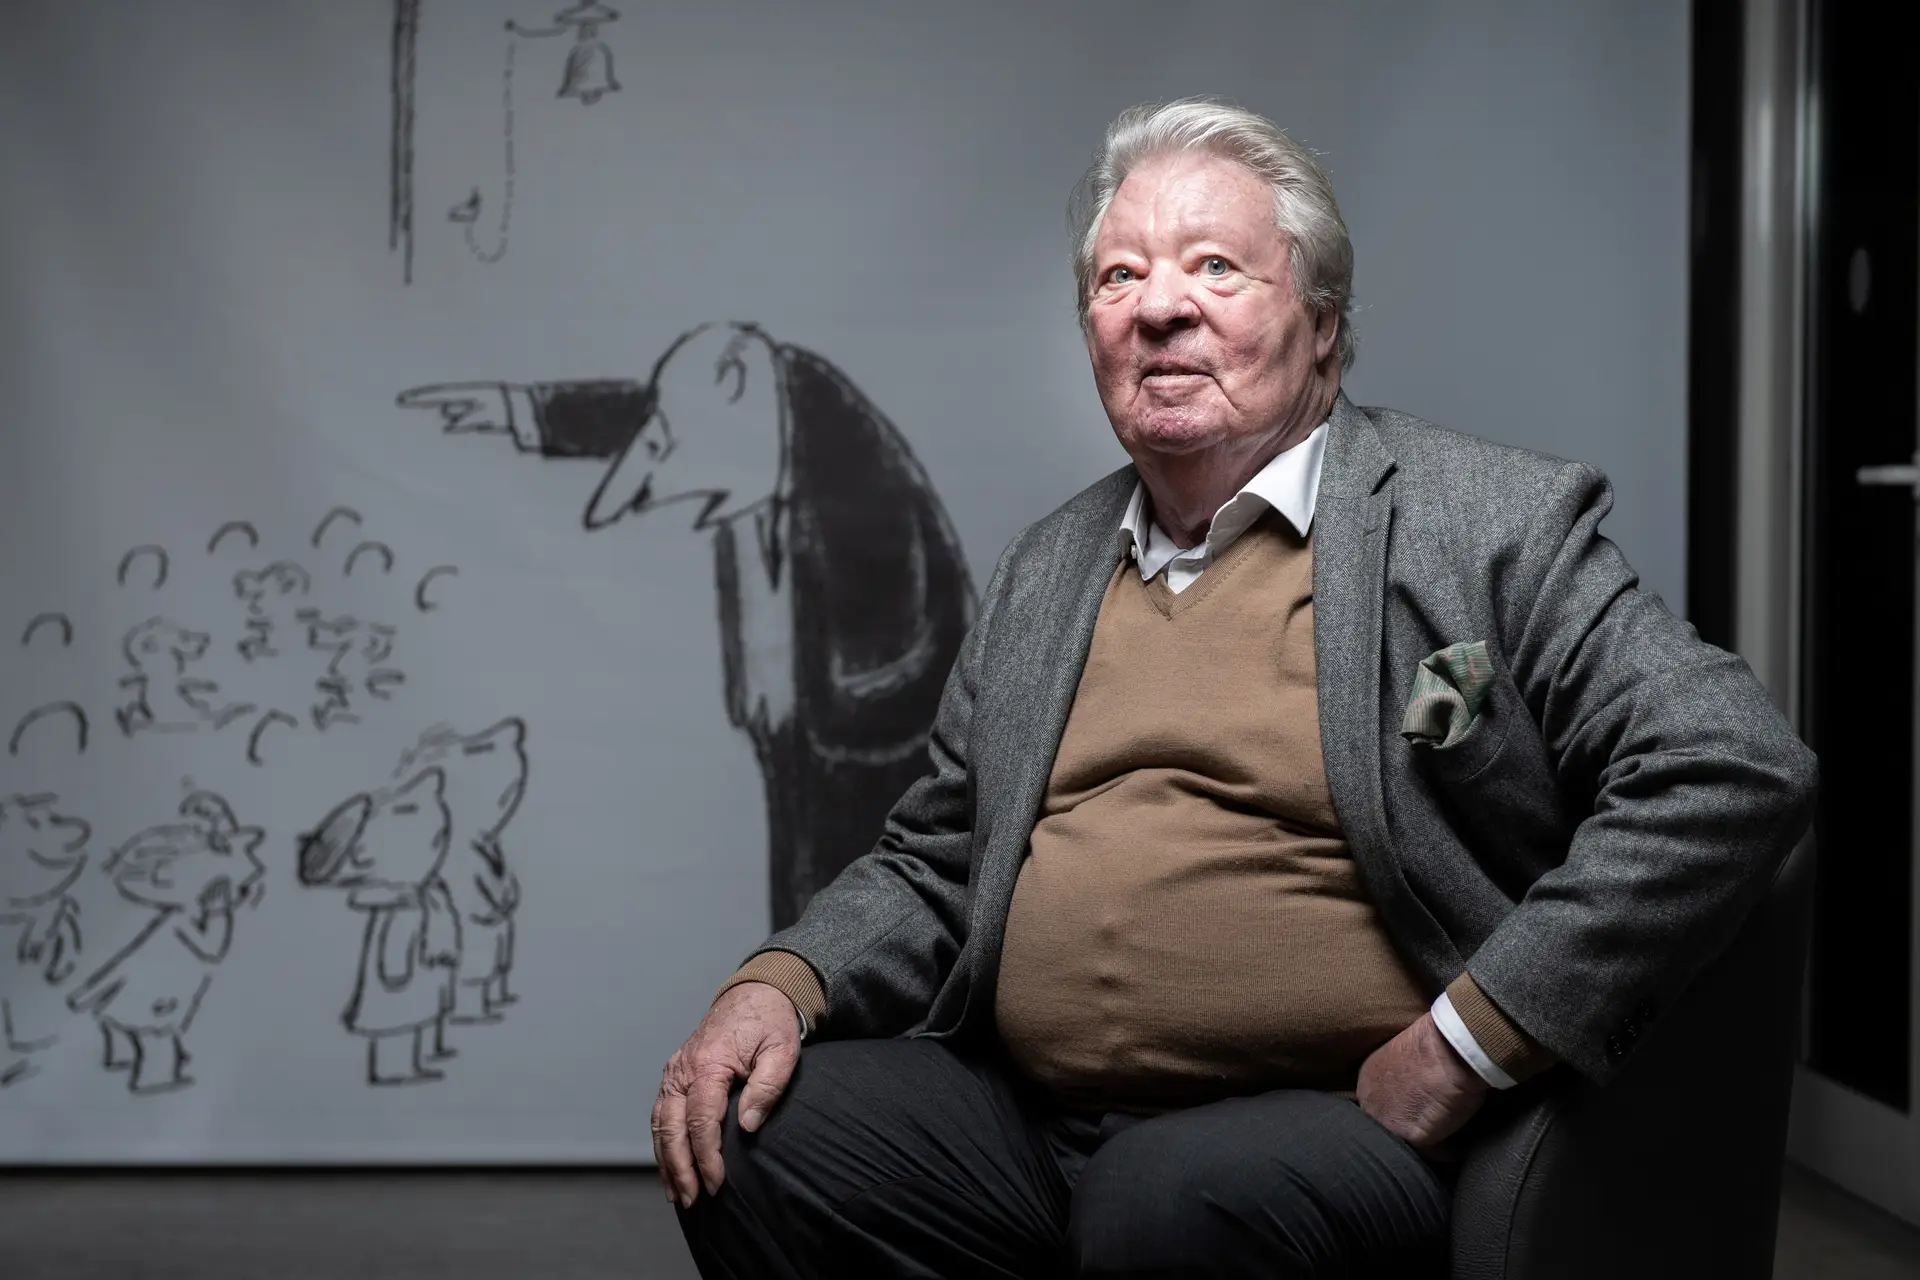 Morreu Jean-Jacques Sempé, cartoonista de "O Menino Nicolau"